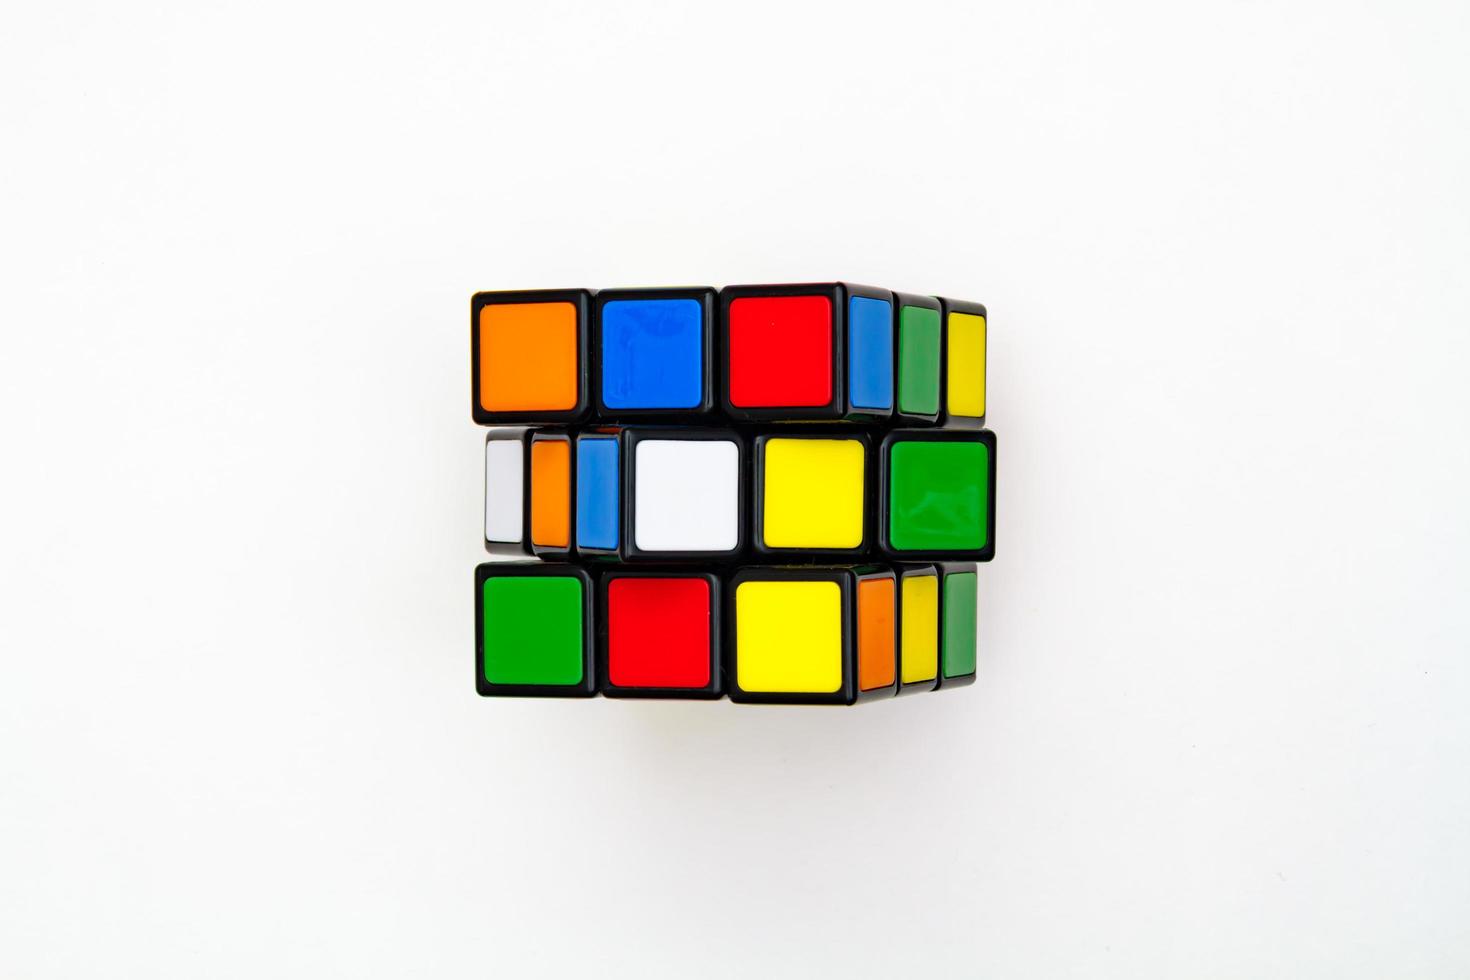 São Petersburgo, Rússia - 17 de julho de 2019 - cubo de rubik, vista superior do cubo de rubik isolada, cubo de rubik em fundo branco, quebra-cabeça colorido, problema de matemática, cobrando por seu cérebro, paleta de arco-íris de cubo foto